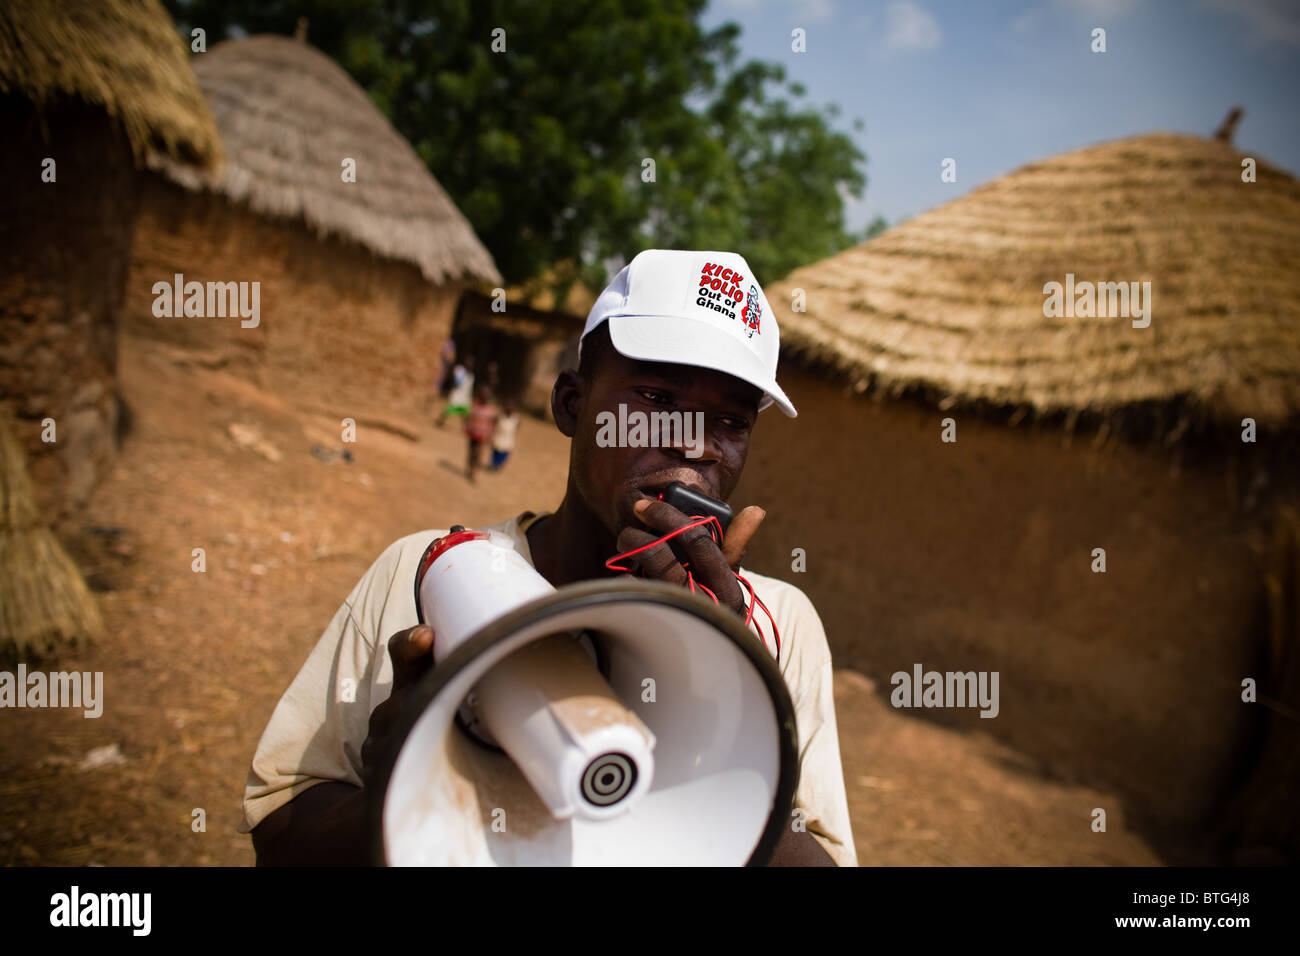 Un bénévole communautaire utilise un porte-voix pour annoncer une prochaine campagne de vaccination nationale Banque D'Images